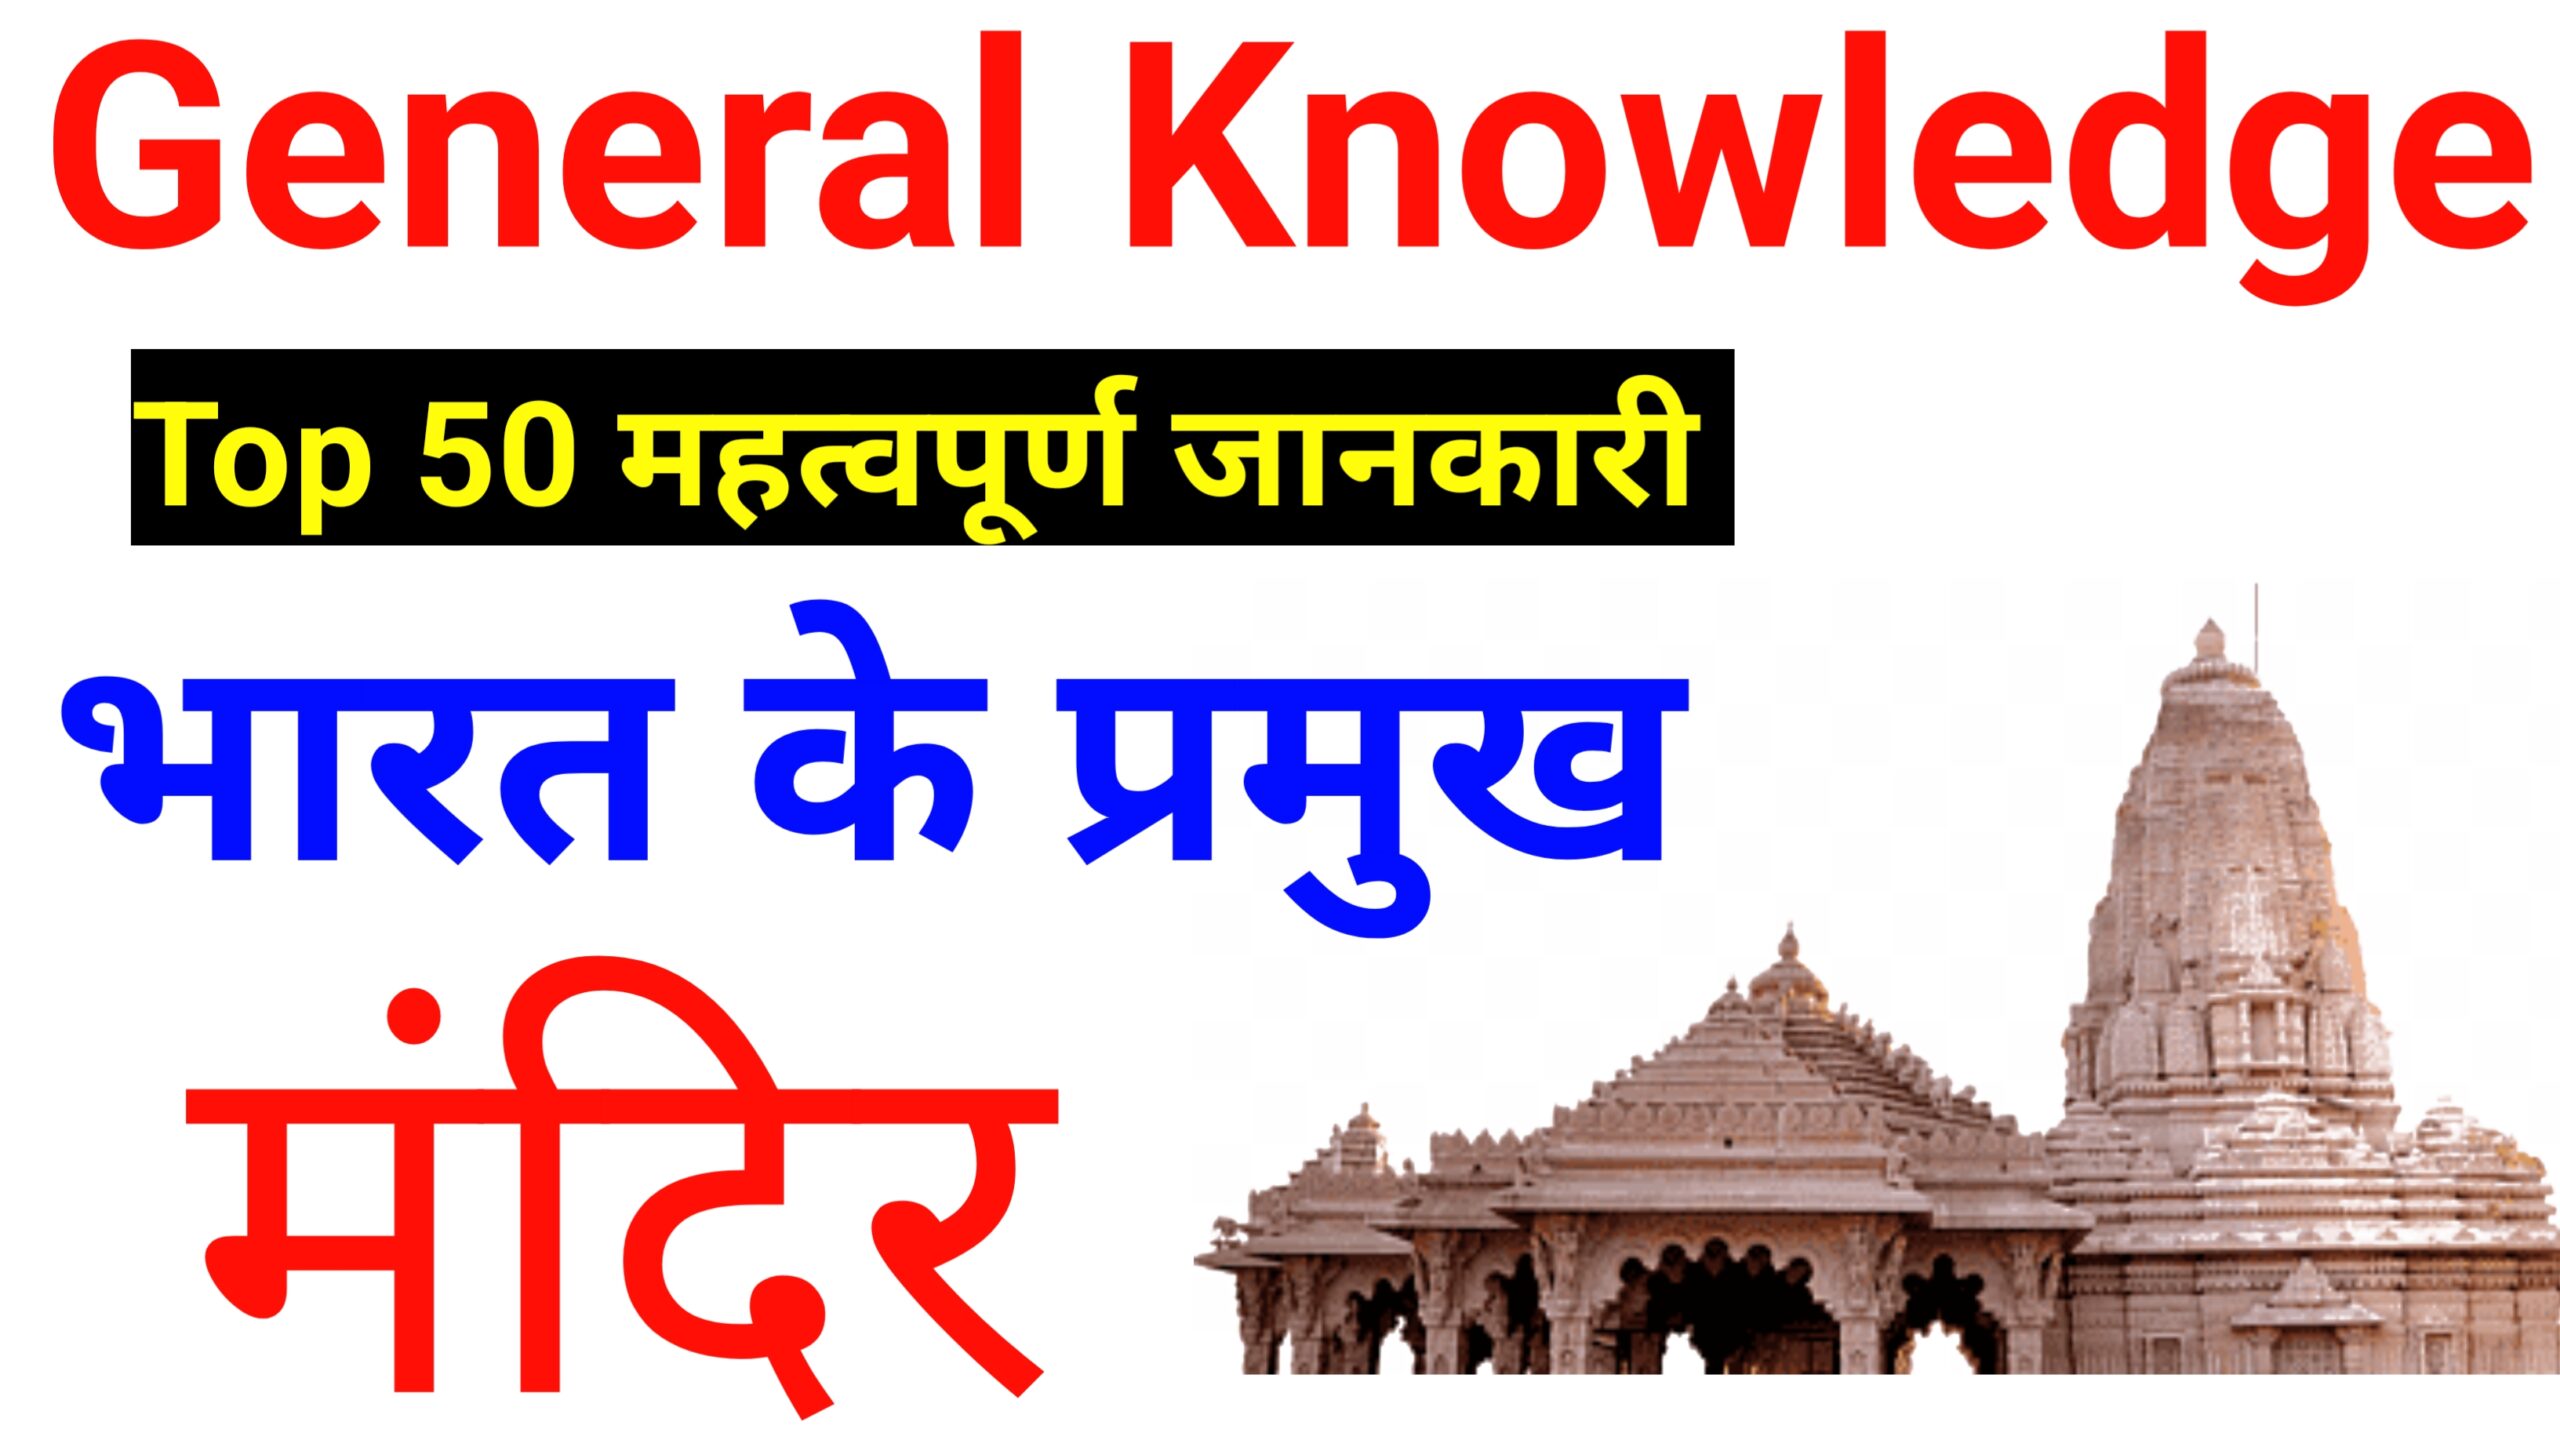 Top 50 भारत के प्रमुख मंदिर - General Knowledge